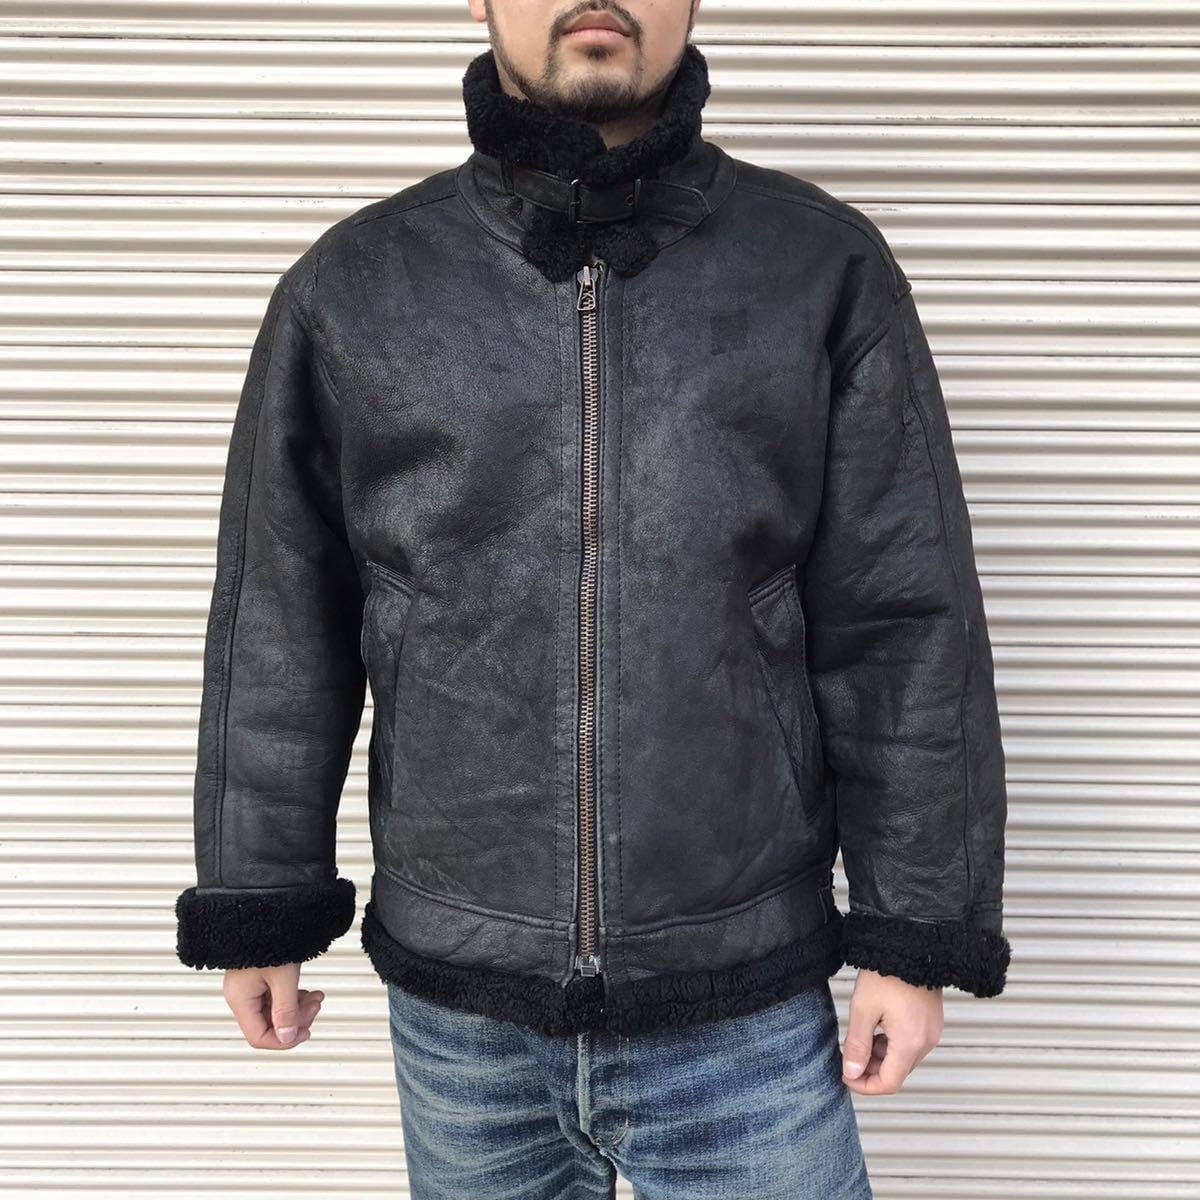 カラーブラック黒TYPE B-3 leather flight jacket black